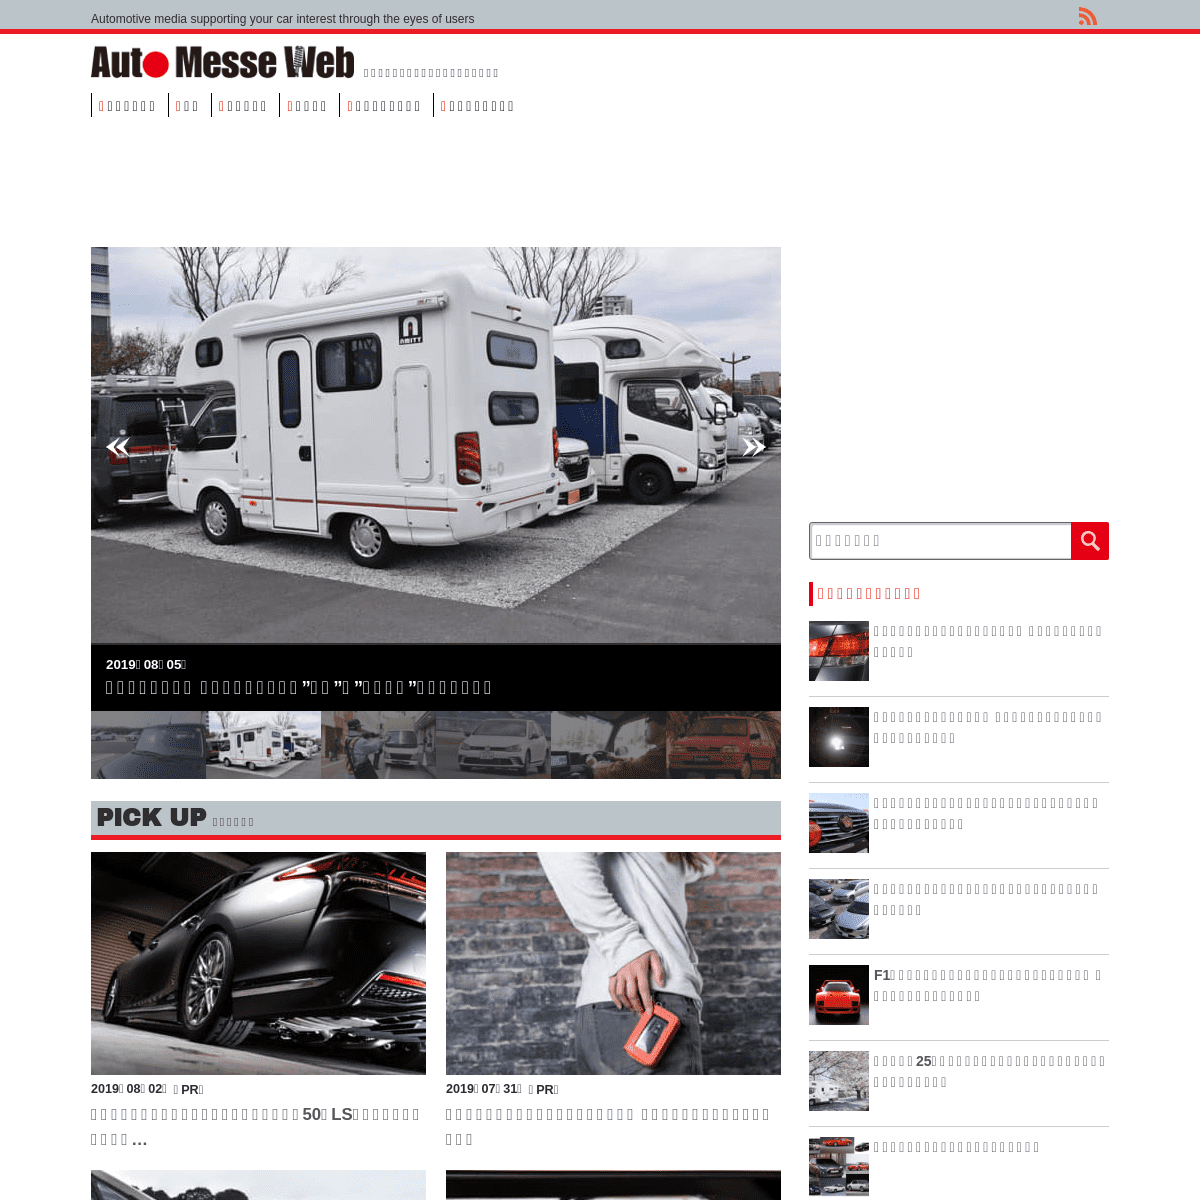 AUTO MESSE WEB | ユーザー目線でクルマを斬る自動車メディア